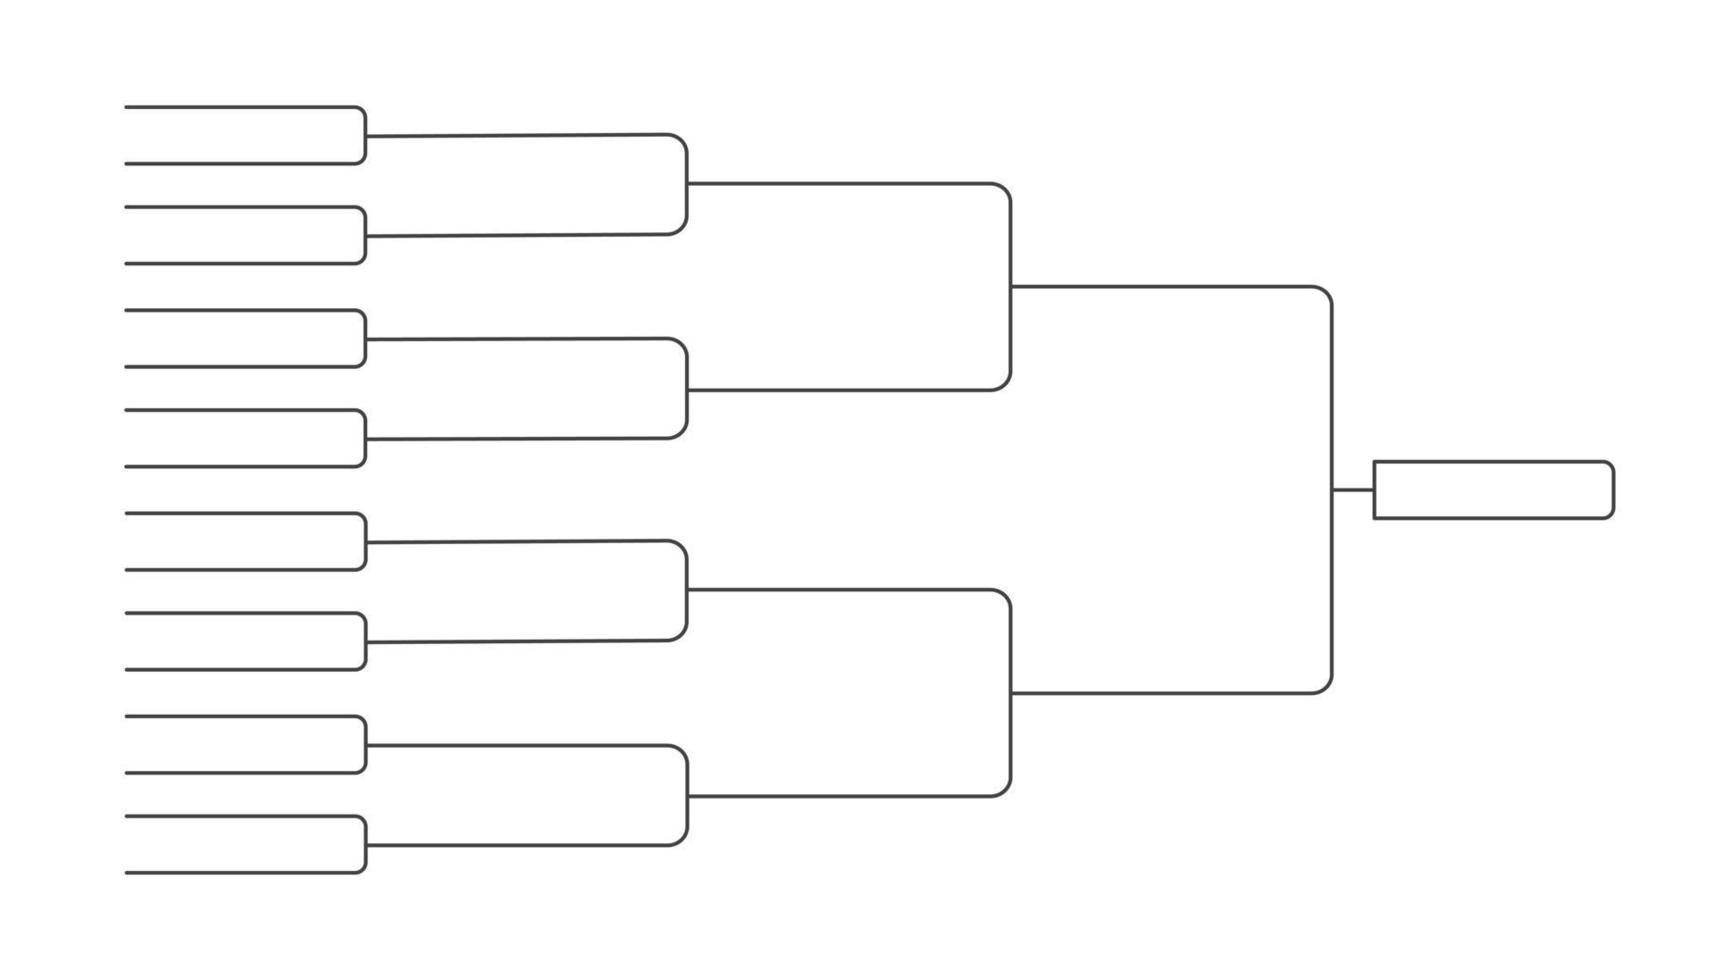 16 team toernooi beugel kampioenschap sjabloon vlakke stijl ontwerp vectorillustratie. vector